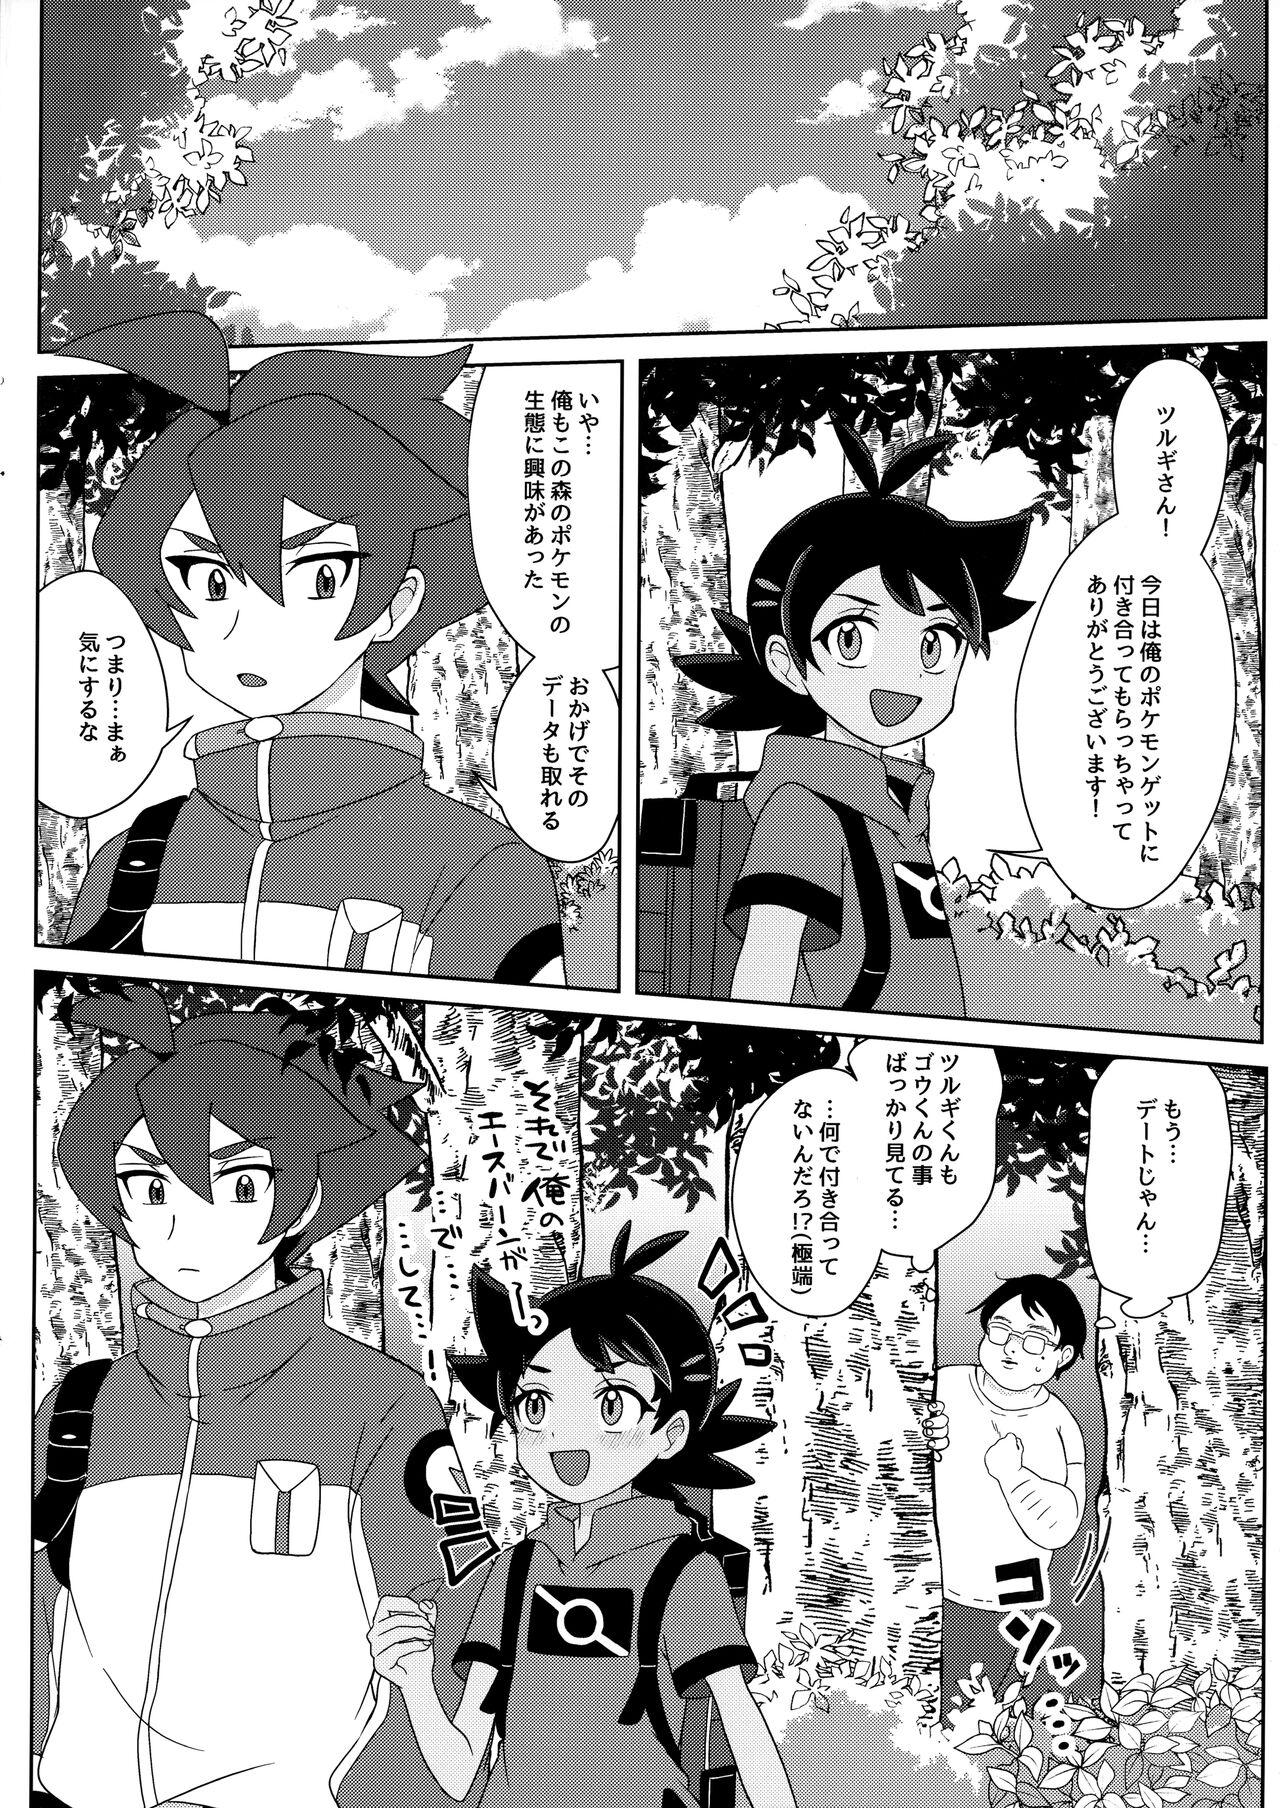 (ShotaFes12) [Chibaken, Shounen Scale, MILKBEE (Chiba, nico, 085)] Tsurugi-san to Goh-kun ga Kimeseku suru Goudoushi (Pokémon Journeys) 10